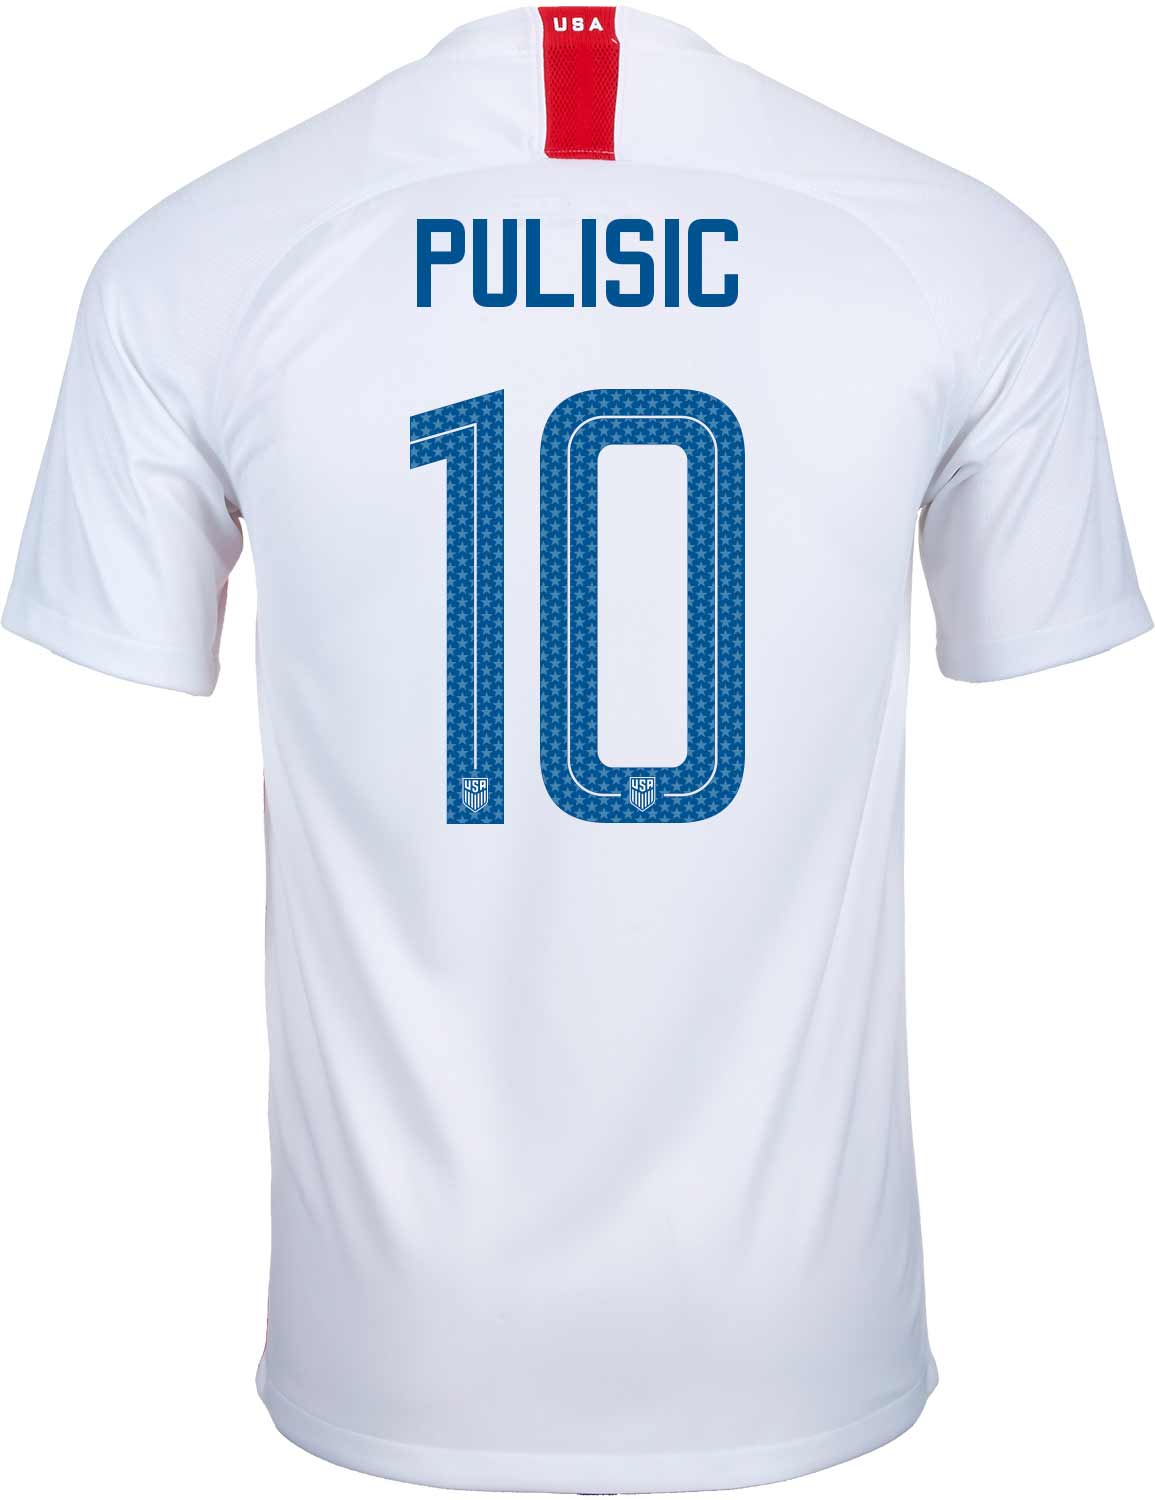 2018/19 Nike Christian Pulisic USA Home Jersey - SoccerPro